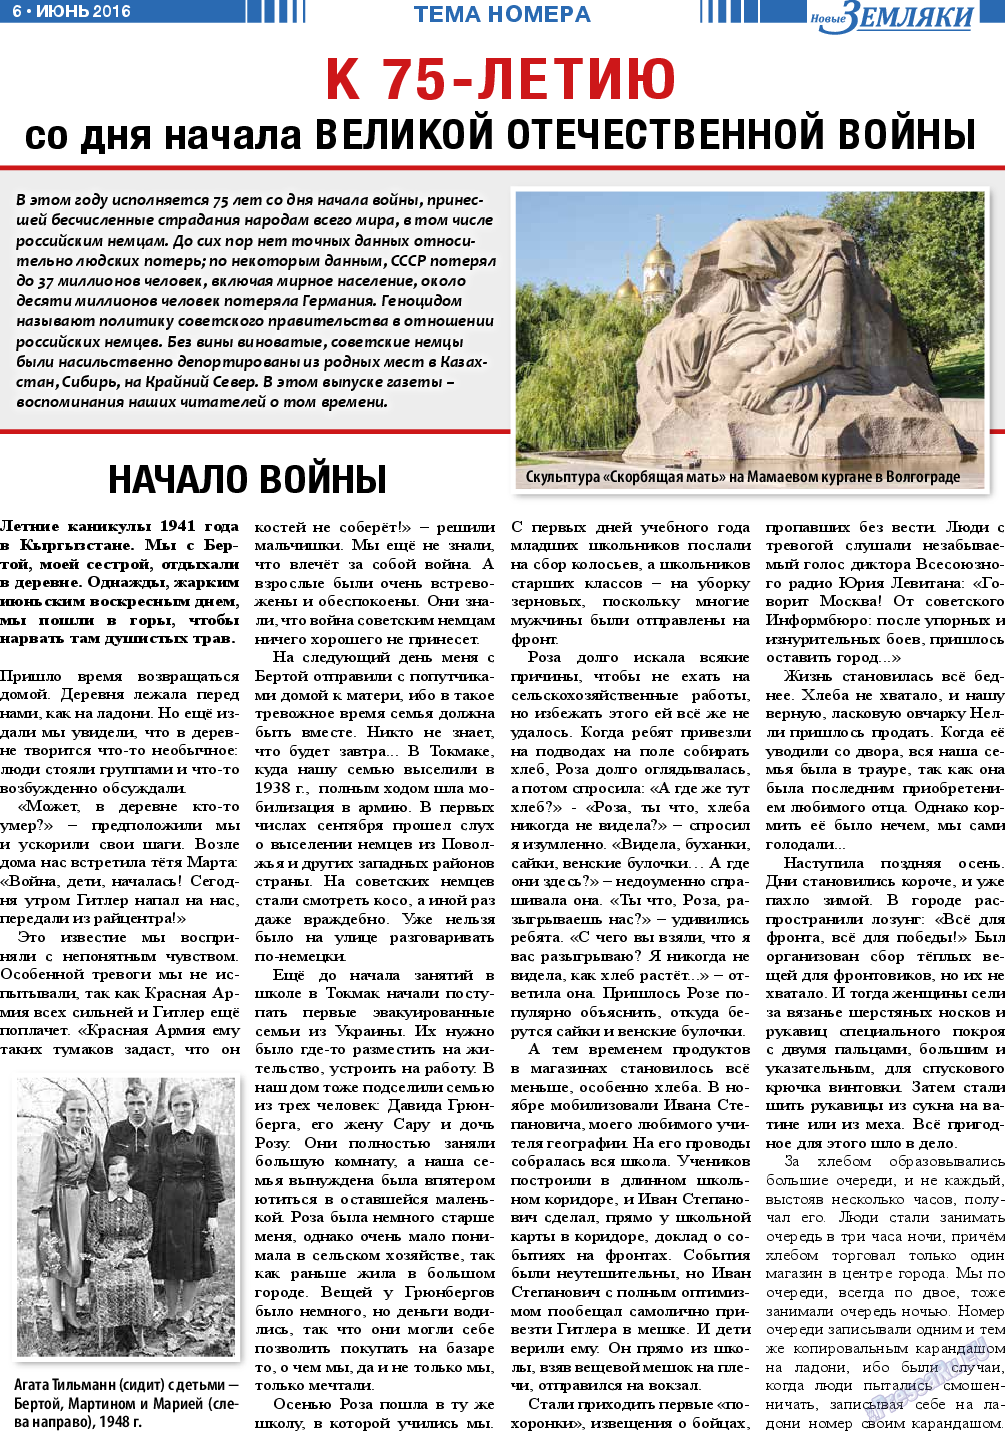 Новые Земляки (газета). 2016 год, номер 6, стр. 6